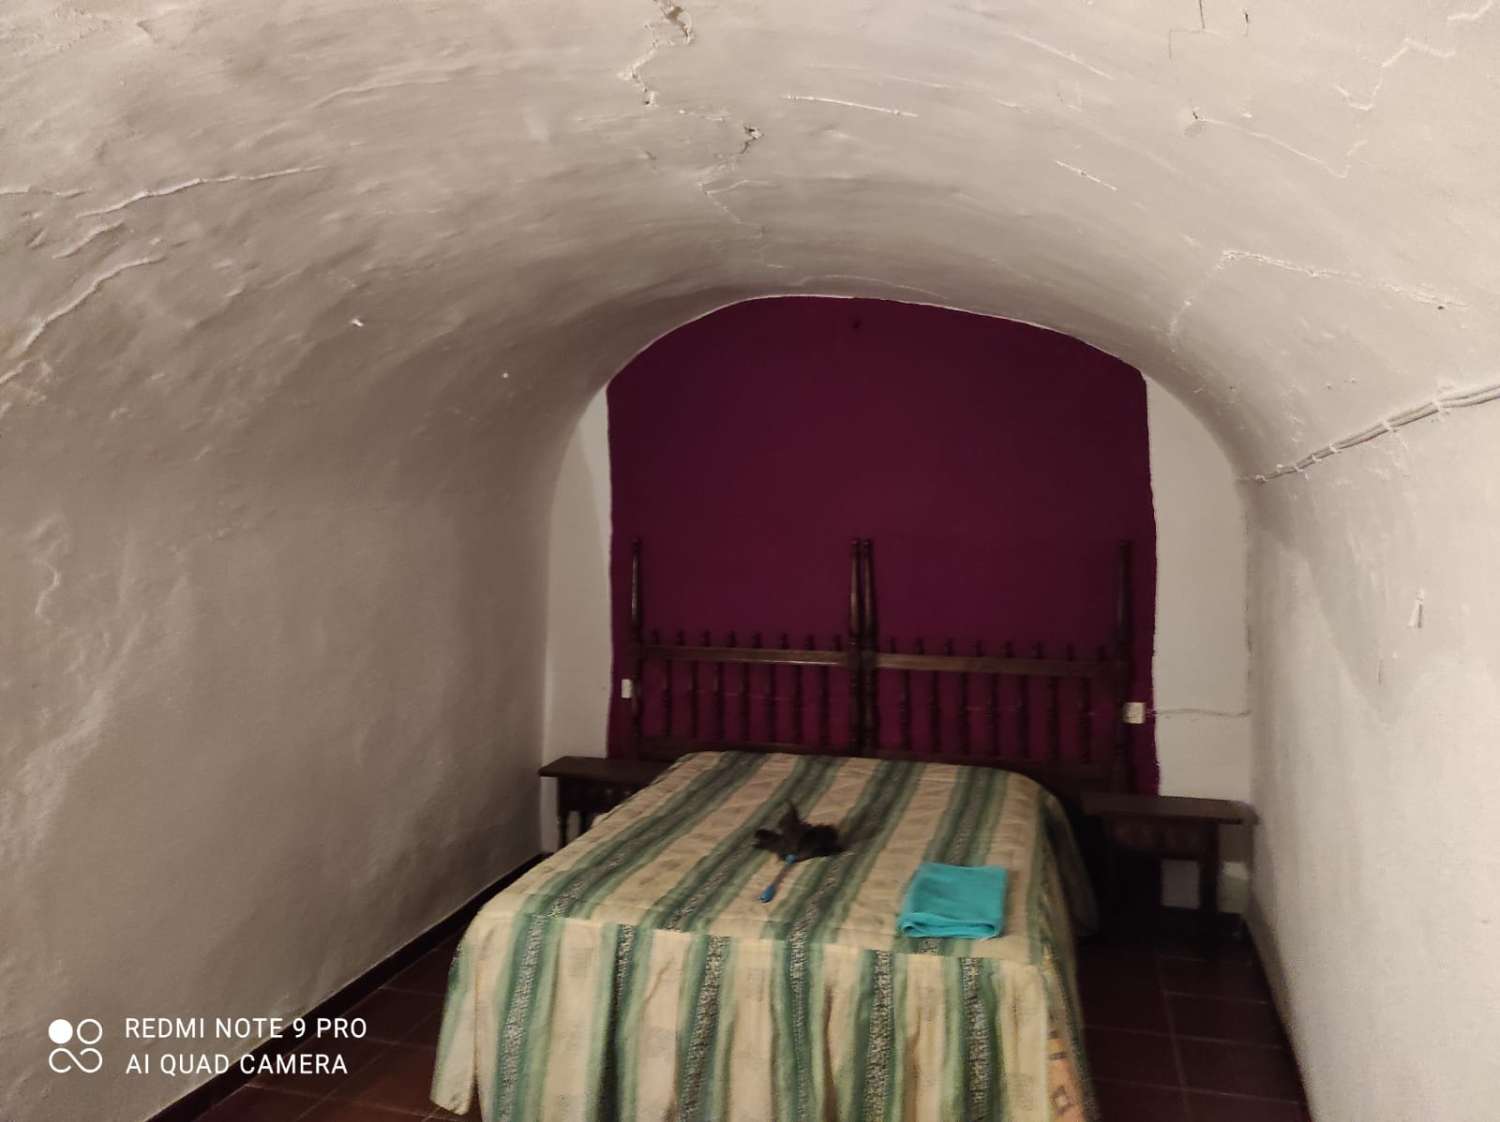 Casa Cueva de 3 dormitorios y 1 baño para reformar en Cúllar